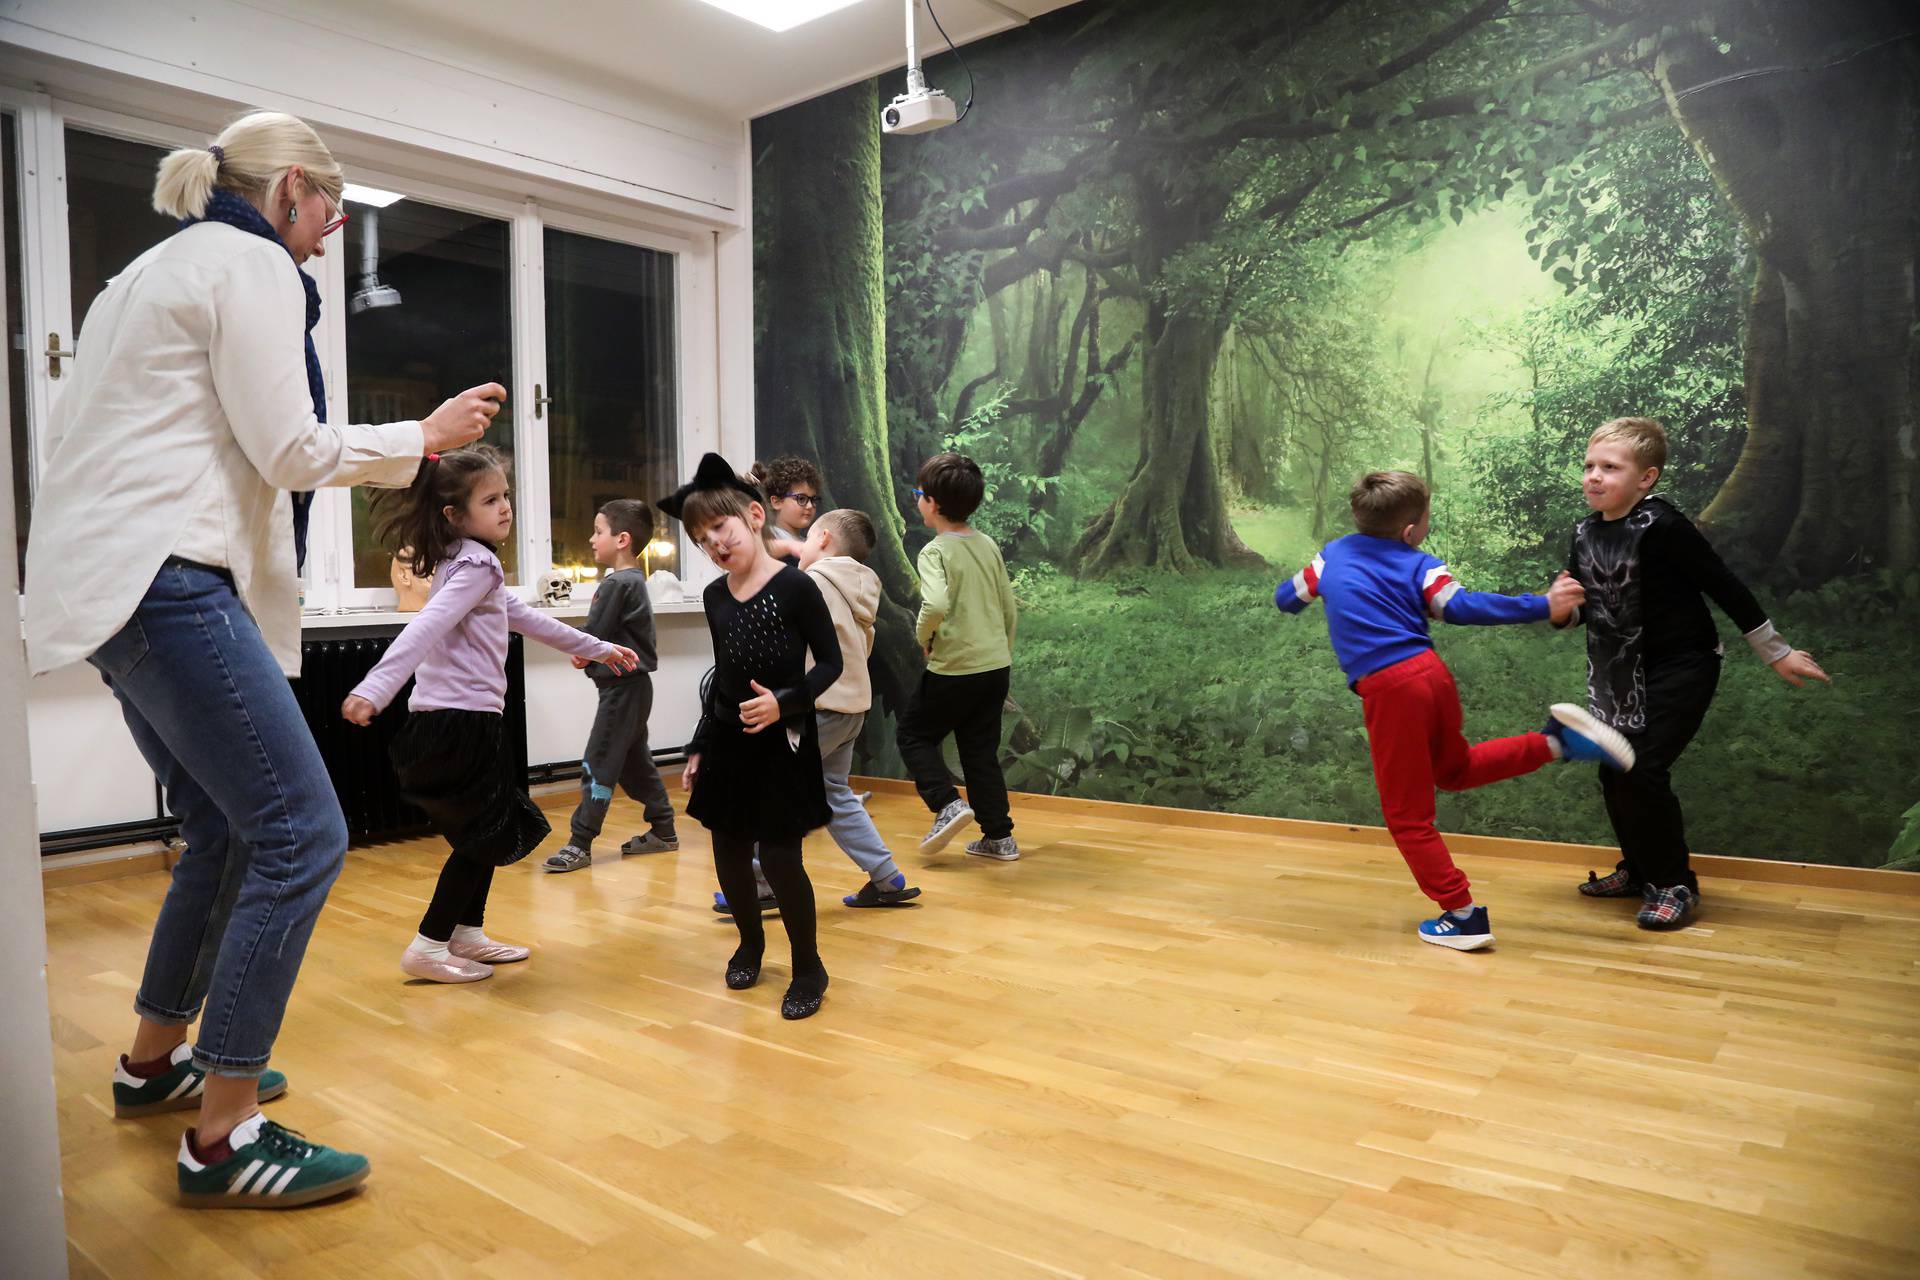 Zagreb: U udruzi Praktikum održavaju se pripreme predškolaca za polazak u osnovnu školu